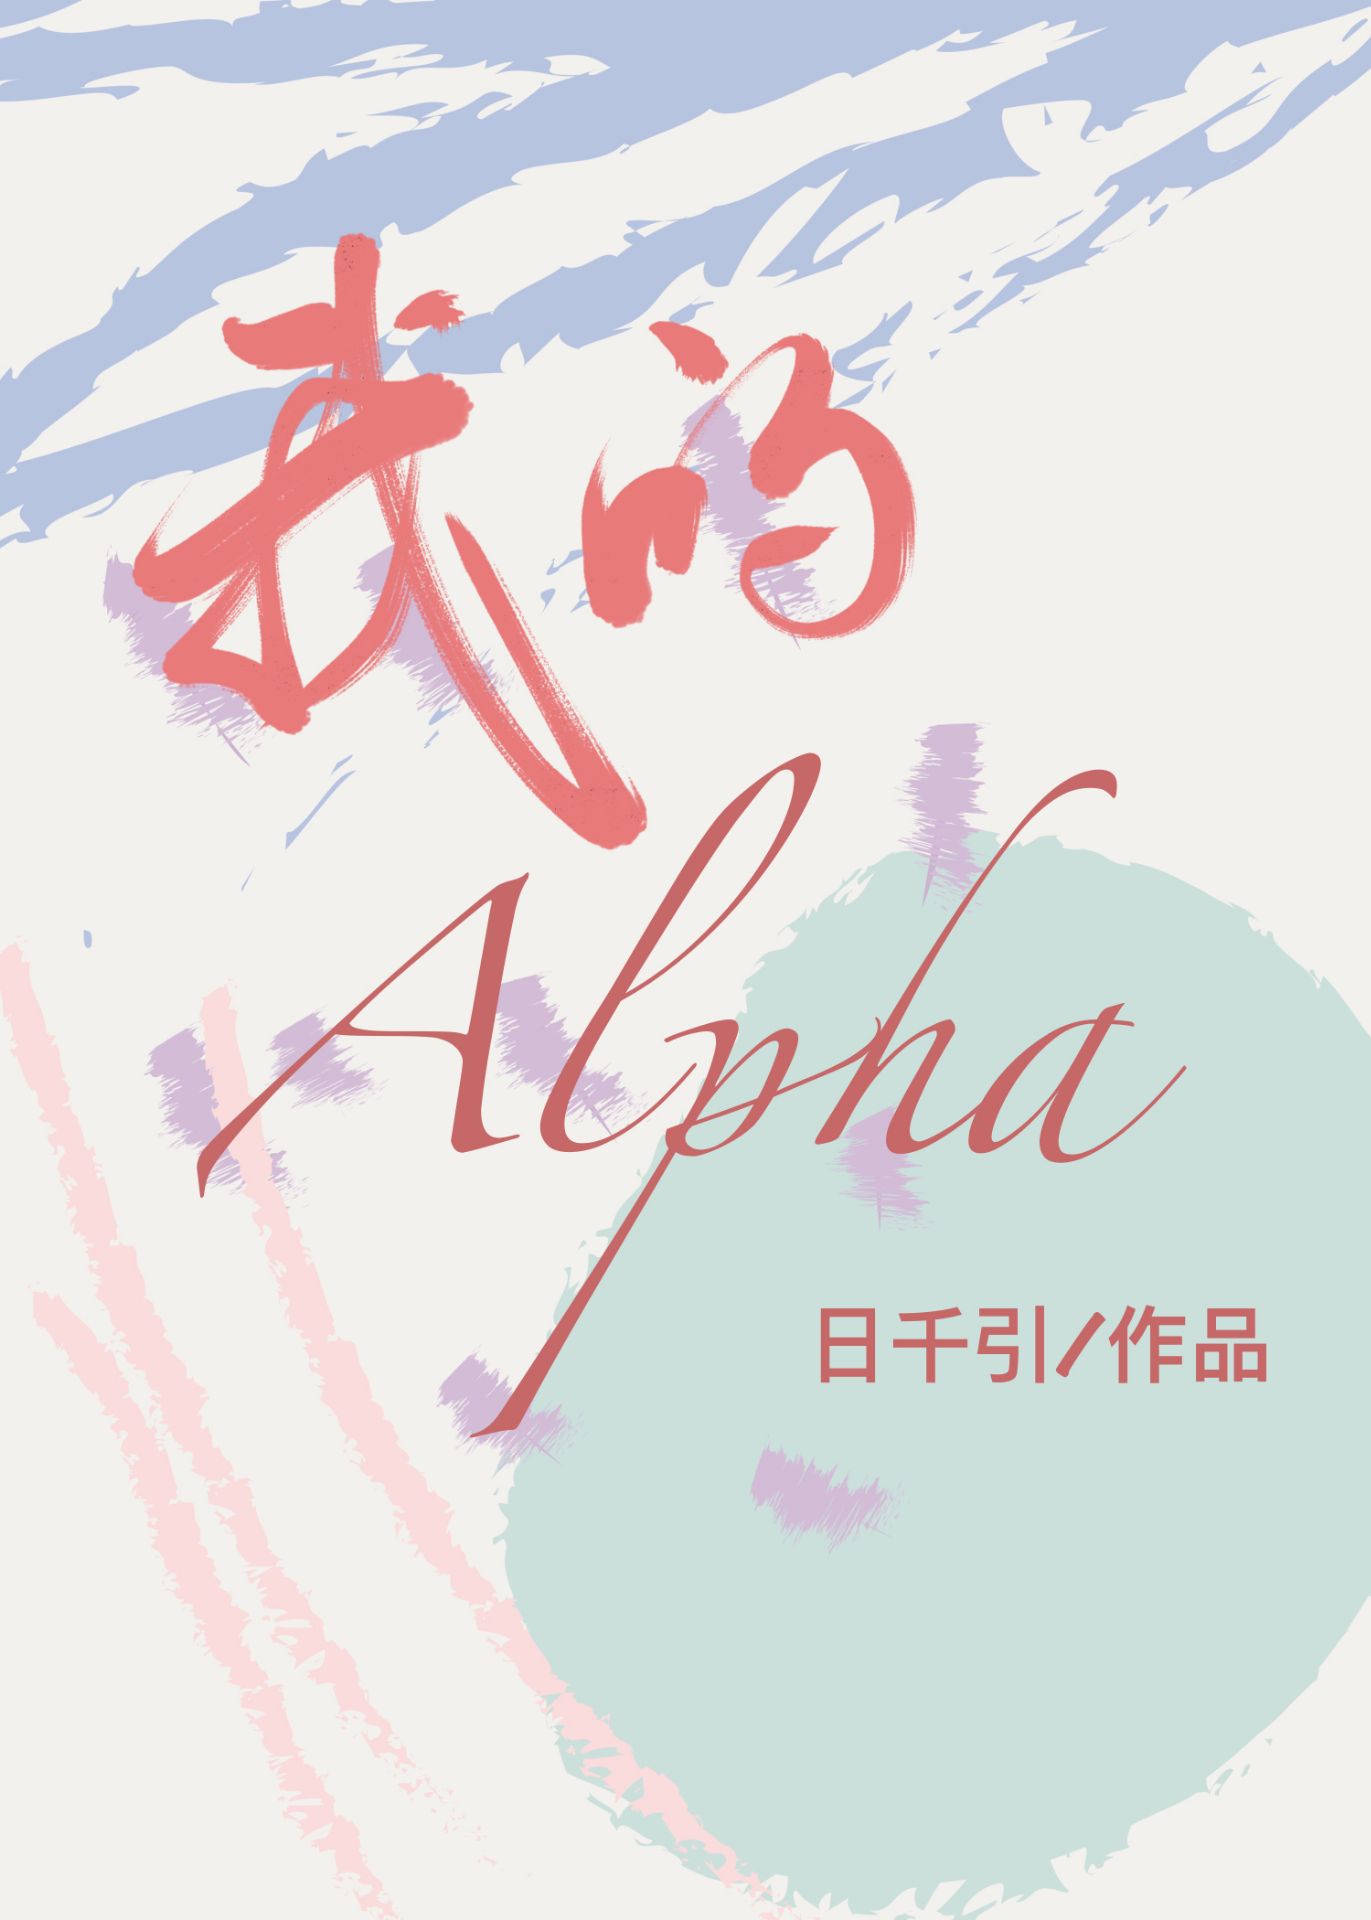 宗沅李博文《我的alpha》_我的alpha